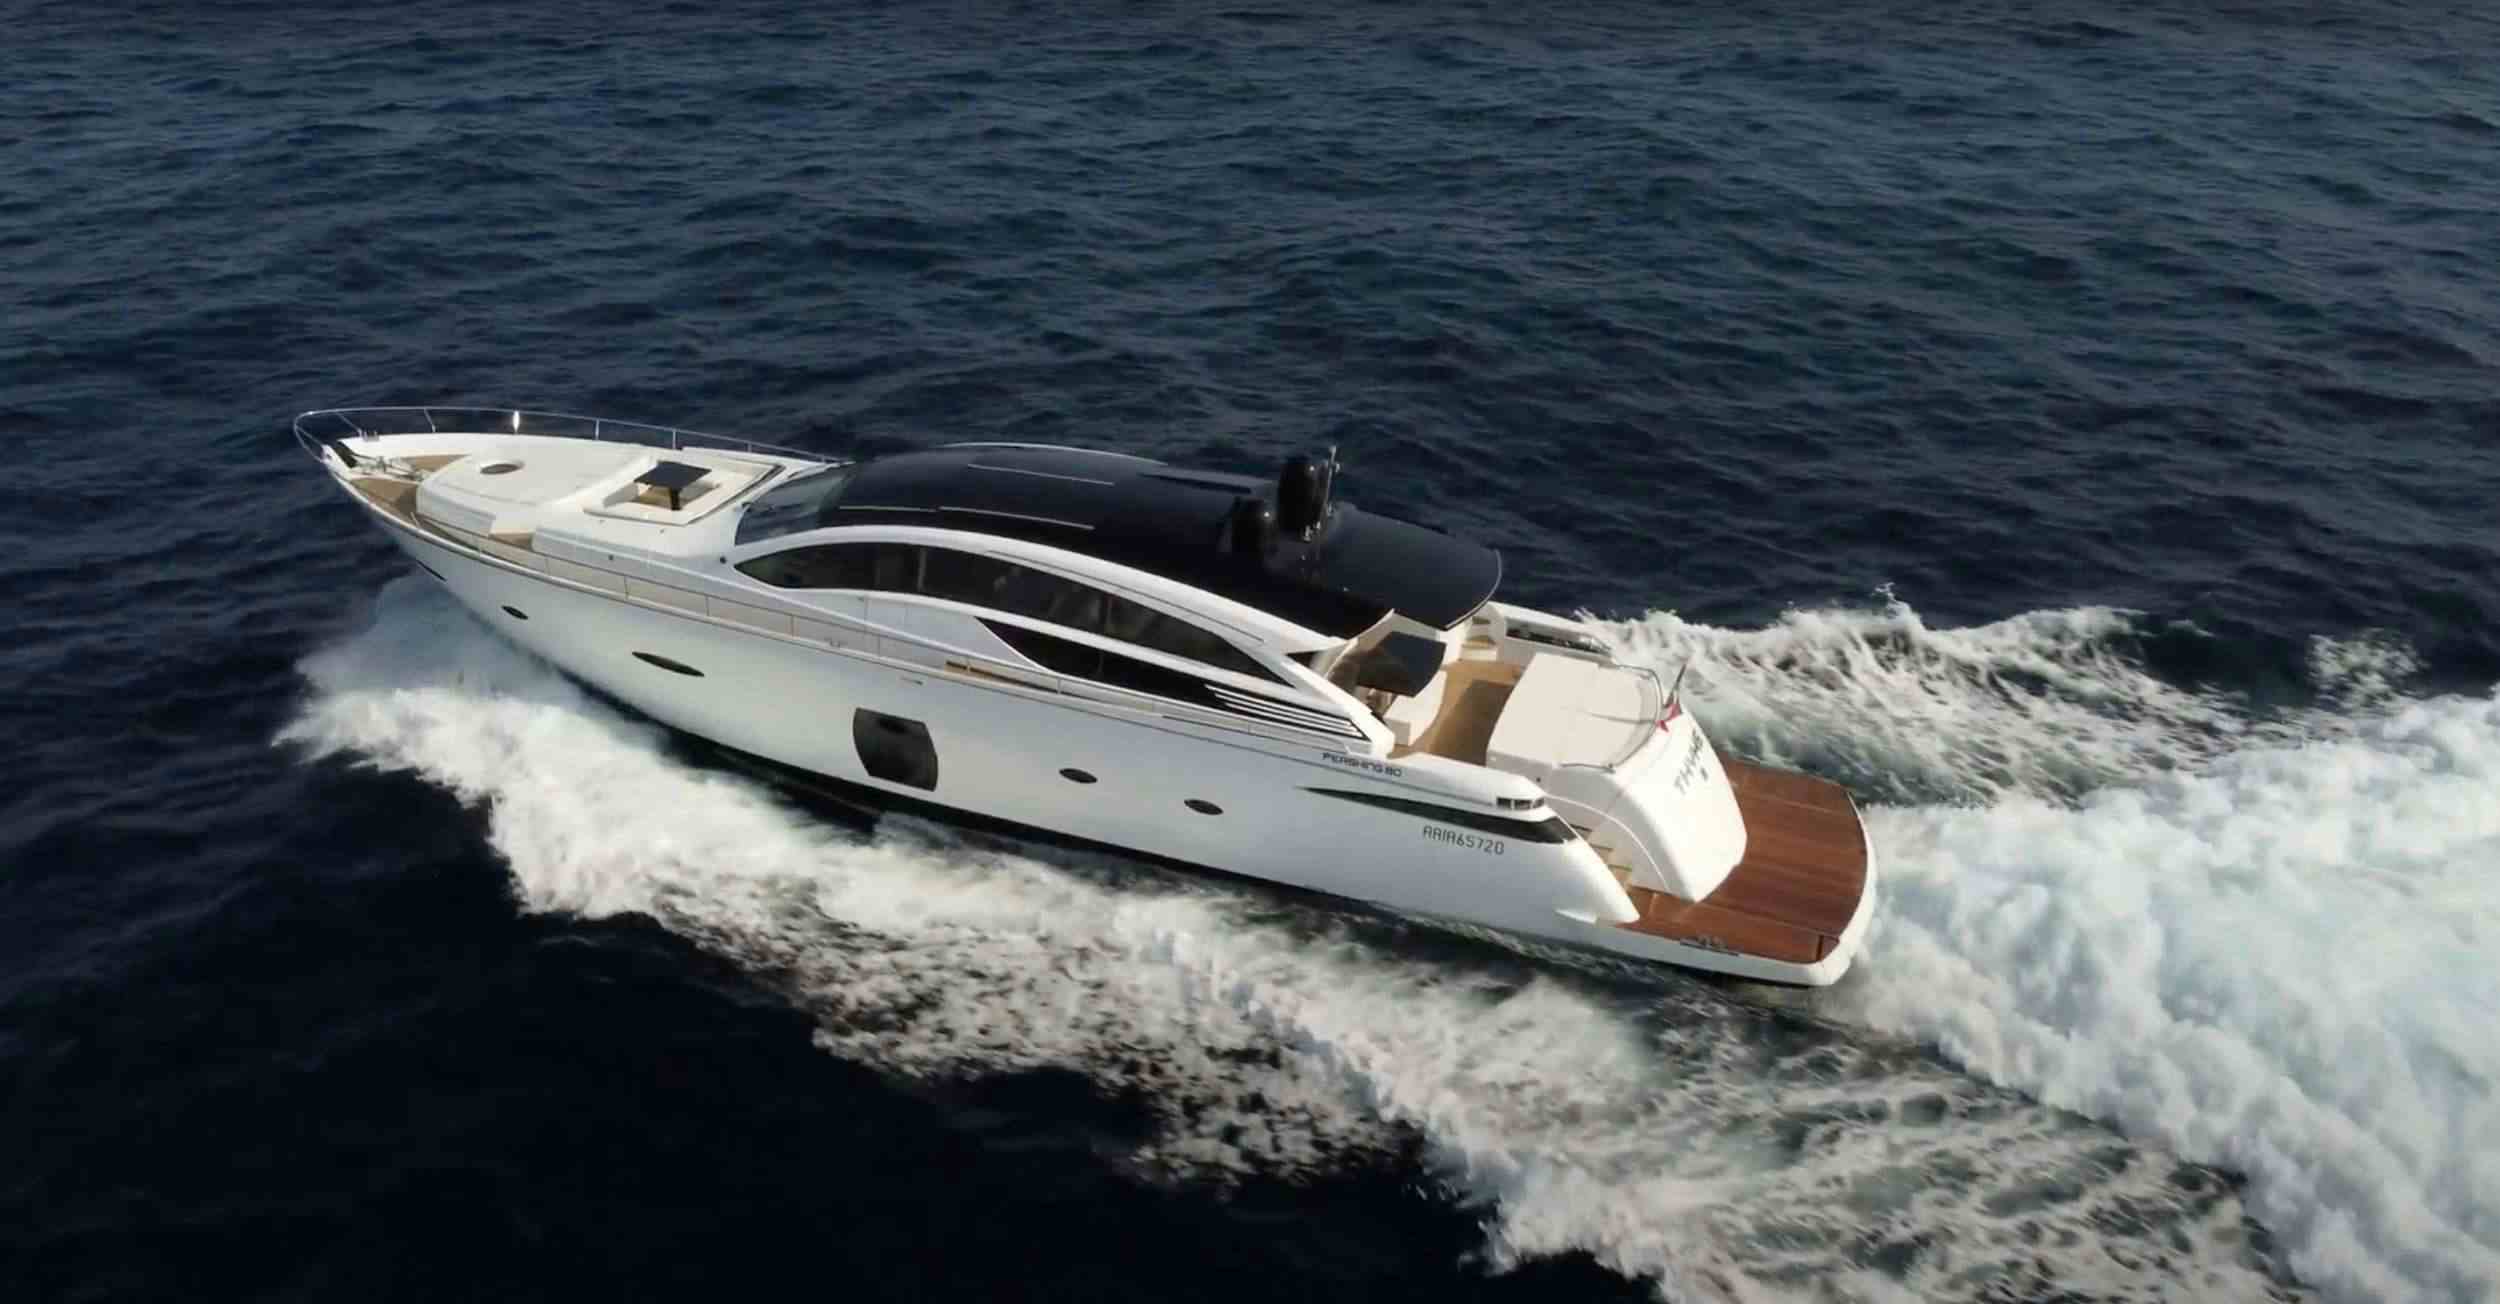 Thyke II - Yacht Charter Follonica & Boat hire in Fr. Riviera & Tyrrhenian Sea 1